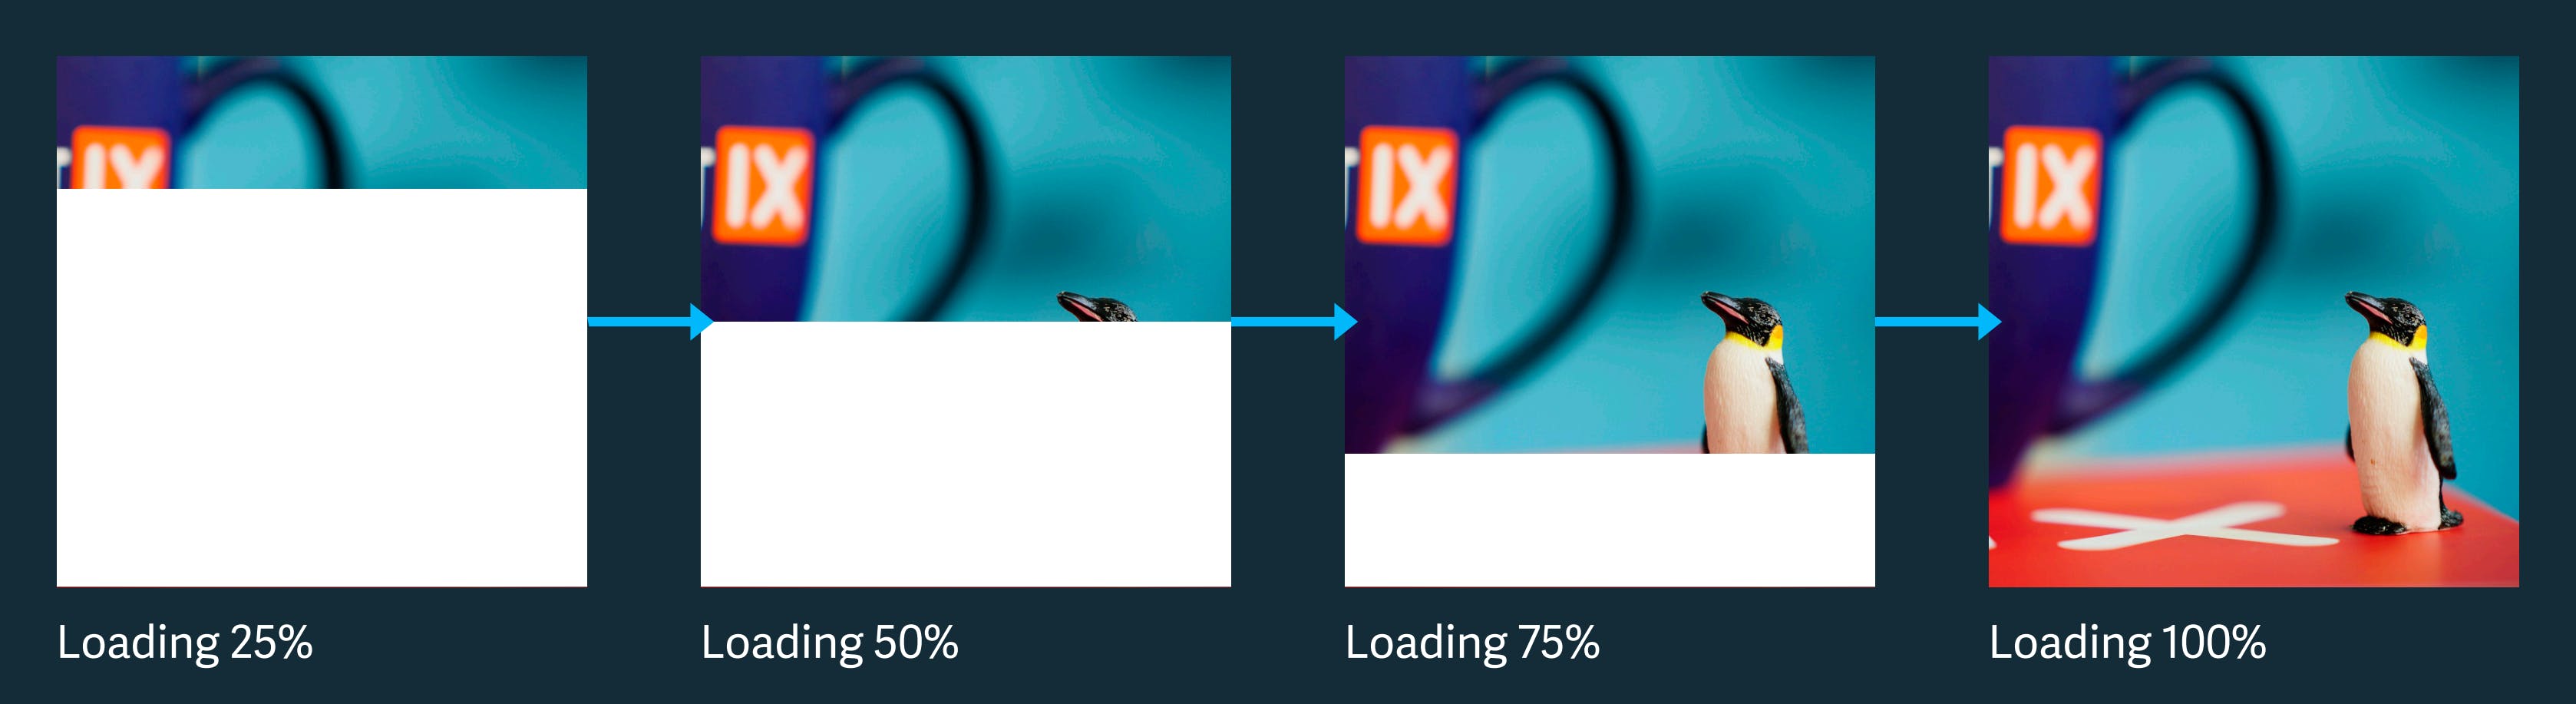 How an image loads using baseline mode